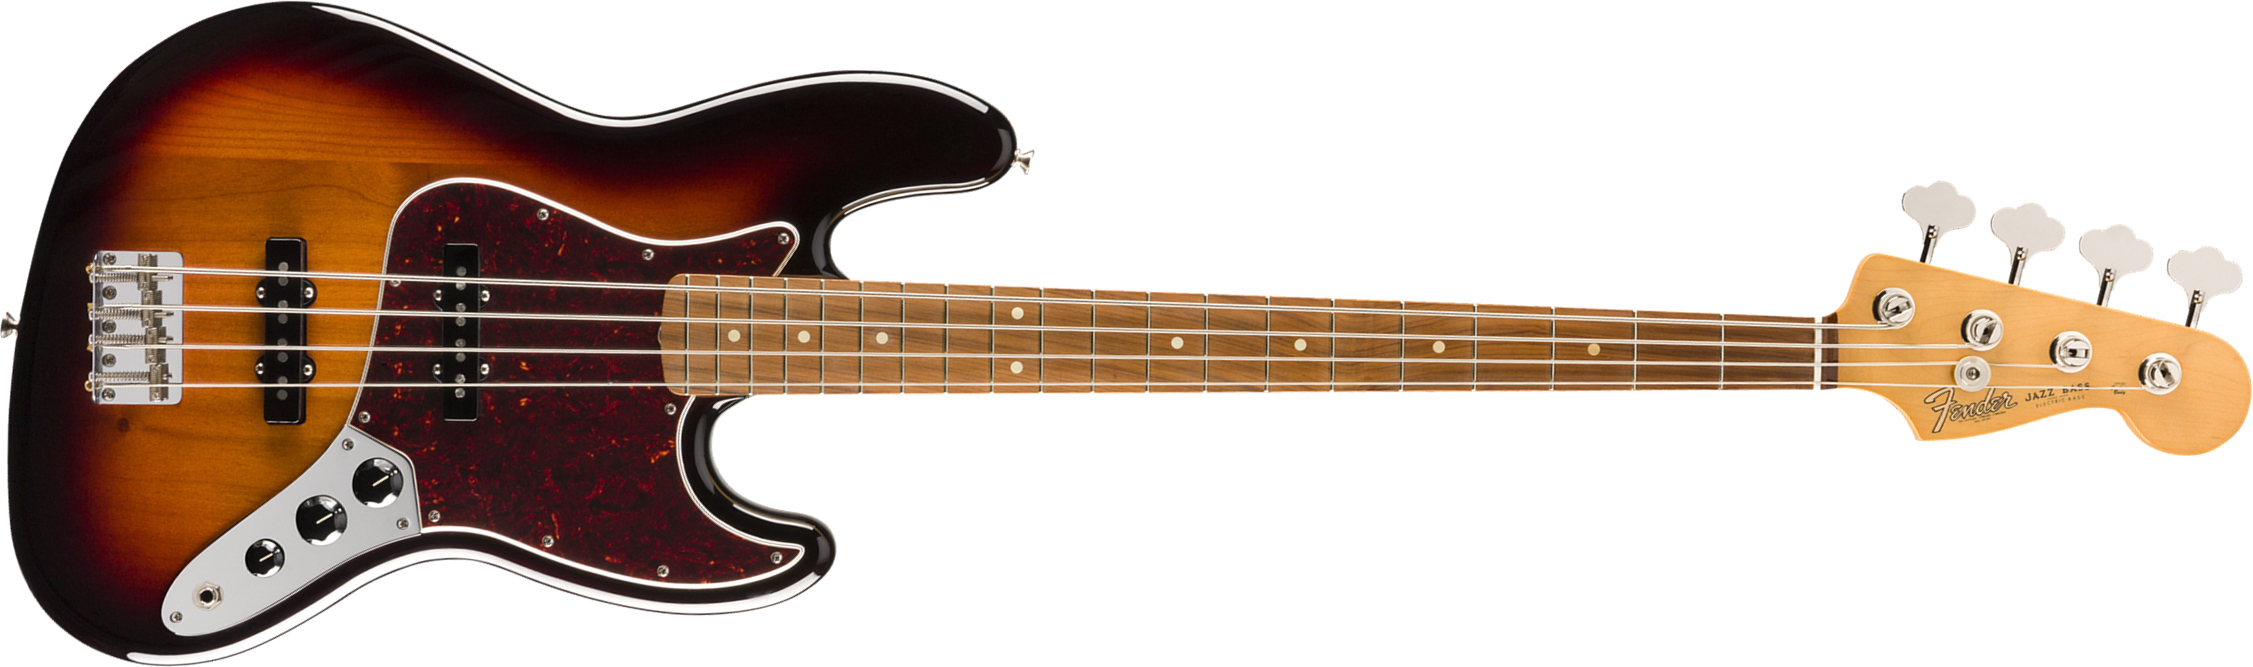 Fender Jazz Bass 60s Vintera Vintage Mex Pf - 3-color Sunburst - Basse Électrique Solid Body - Main picture